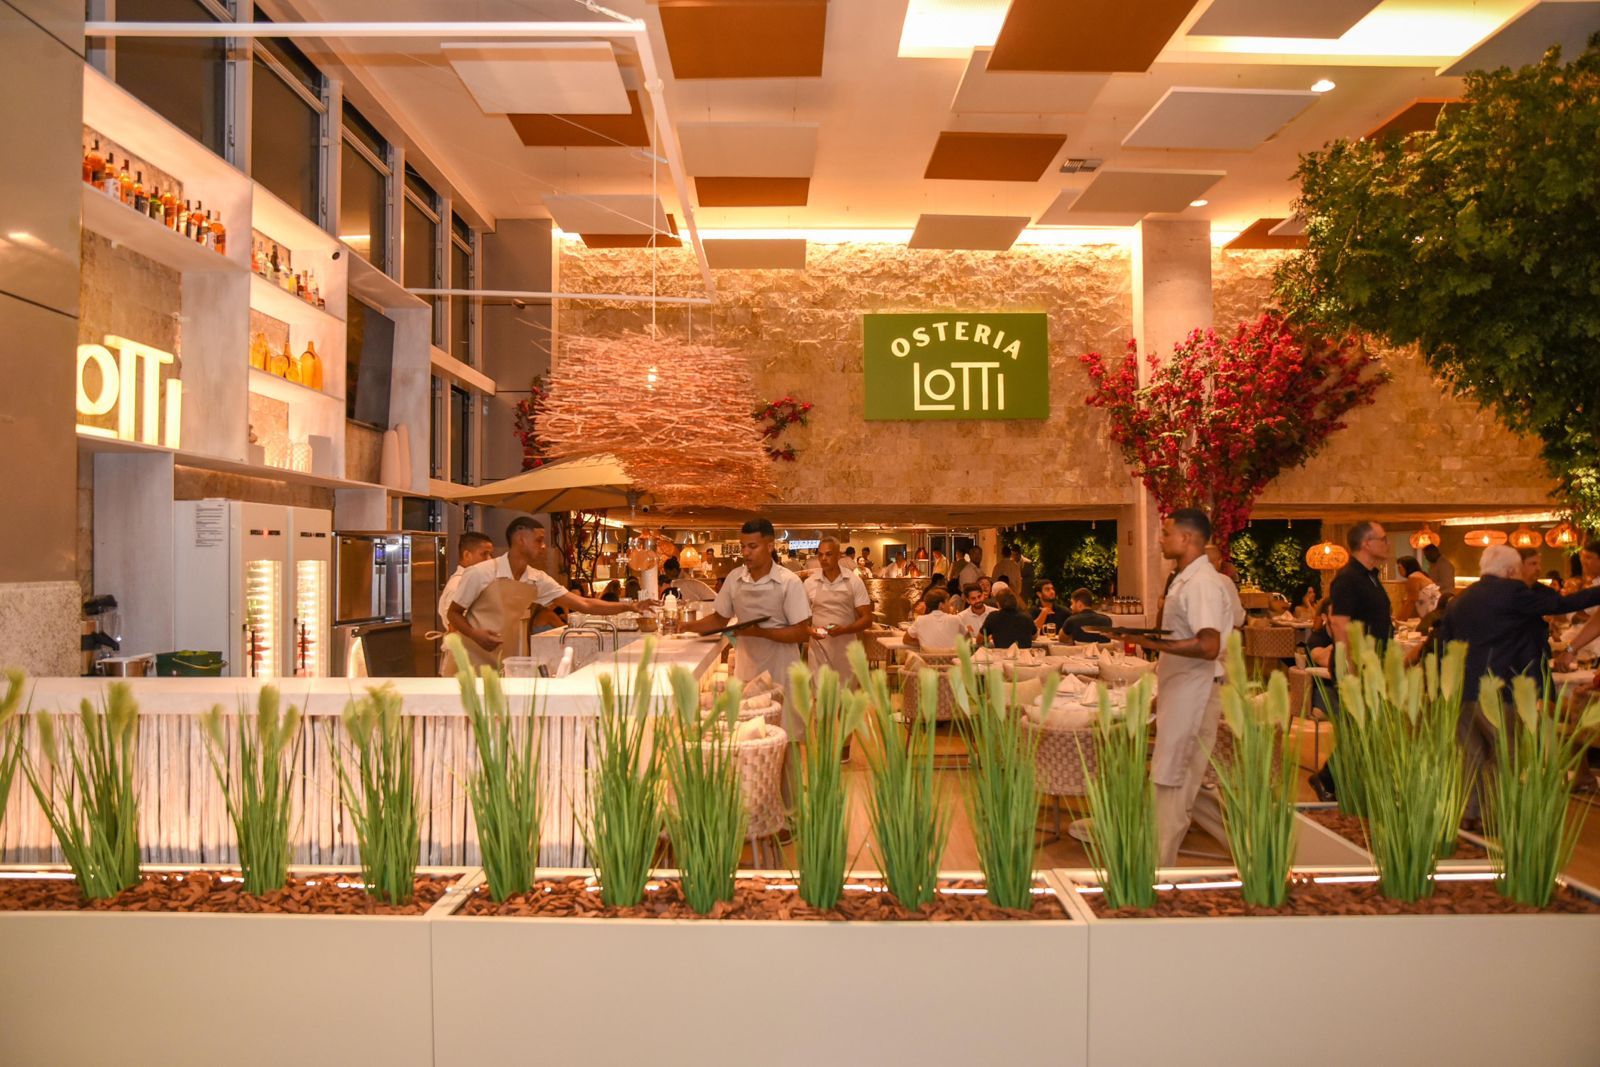 Fotos: Conheça o novo Osteria Lotti, restaurante italiano com 400 m² que acaba de ser inaugurado no Salvador Shopping